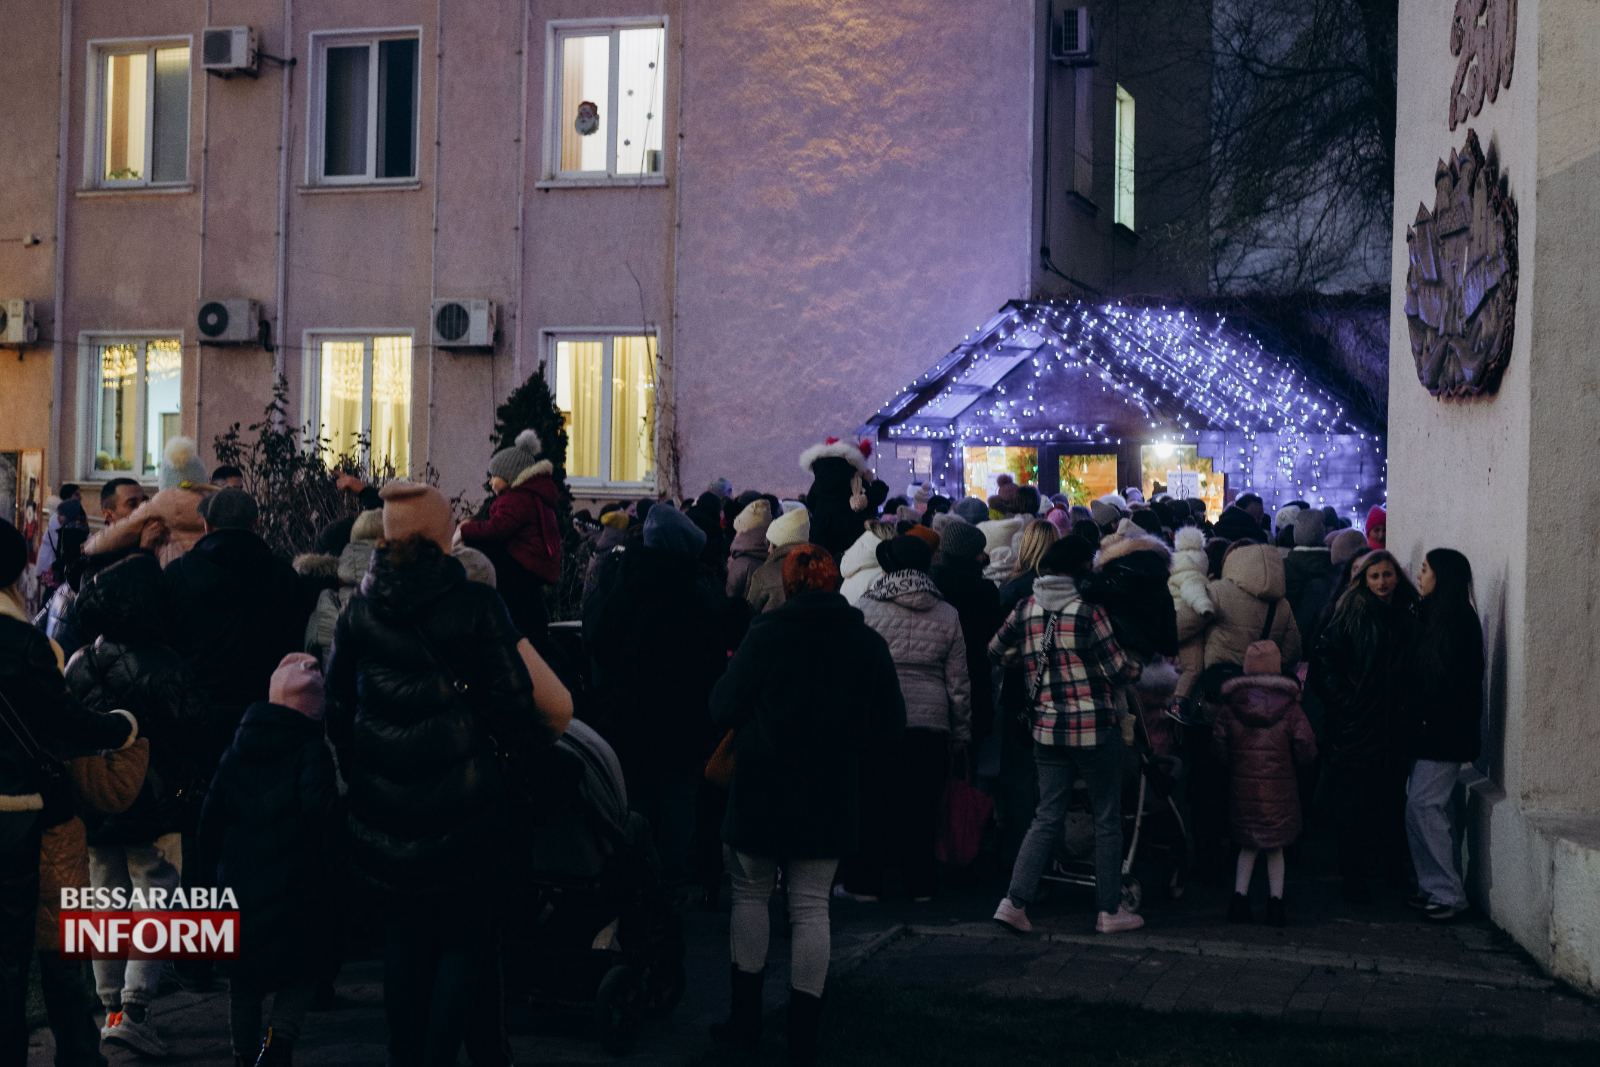 В Белгороде-Днестровском для самых маленьких жителей провели интересную программу, а Святой Николай не оставил никого без подарка (фоторепортаж)